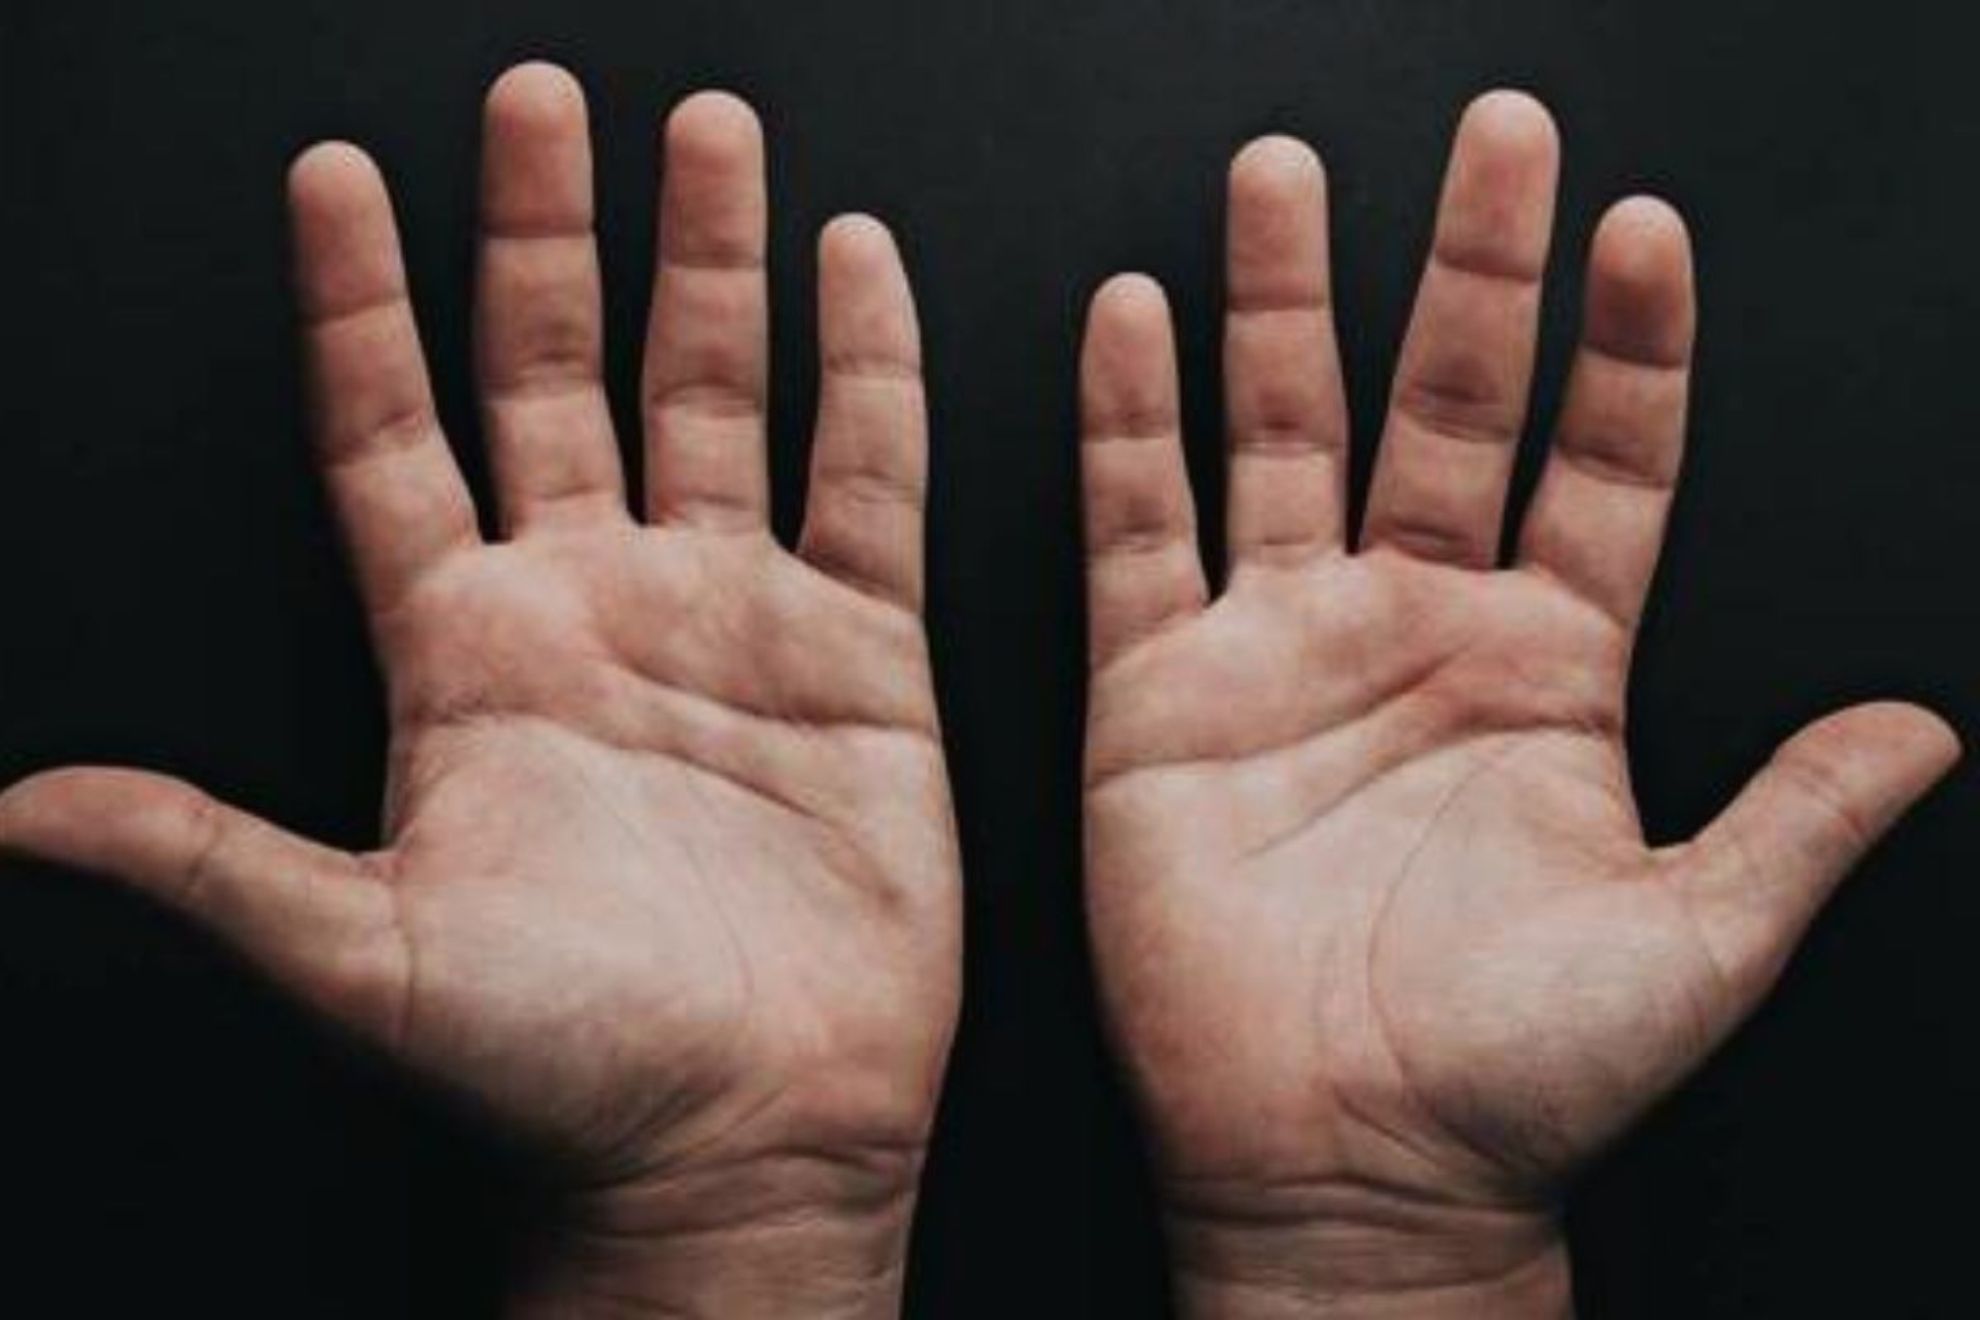 Un nuevo estudio revela que el tamaño de los dedos podría indicar la gravedad del Covid-19